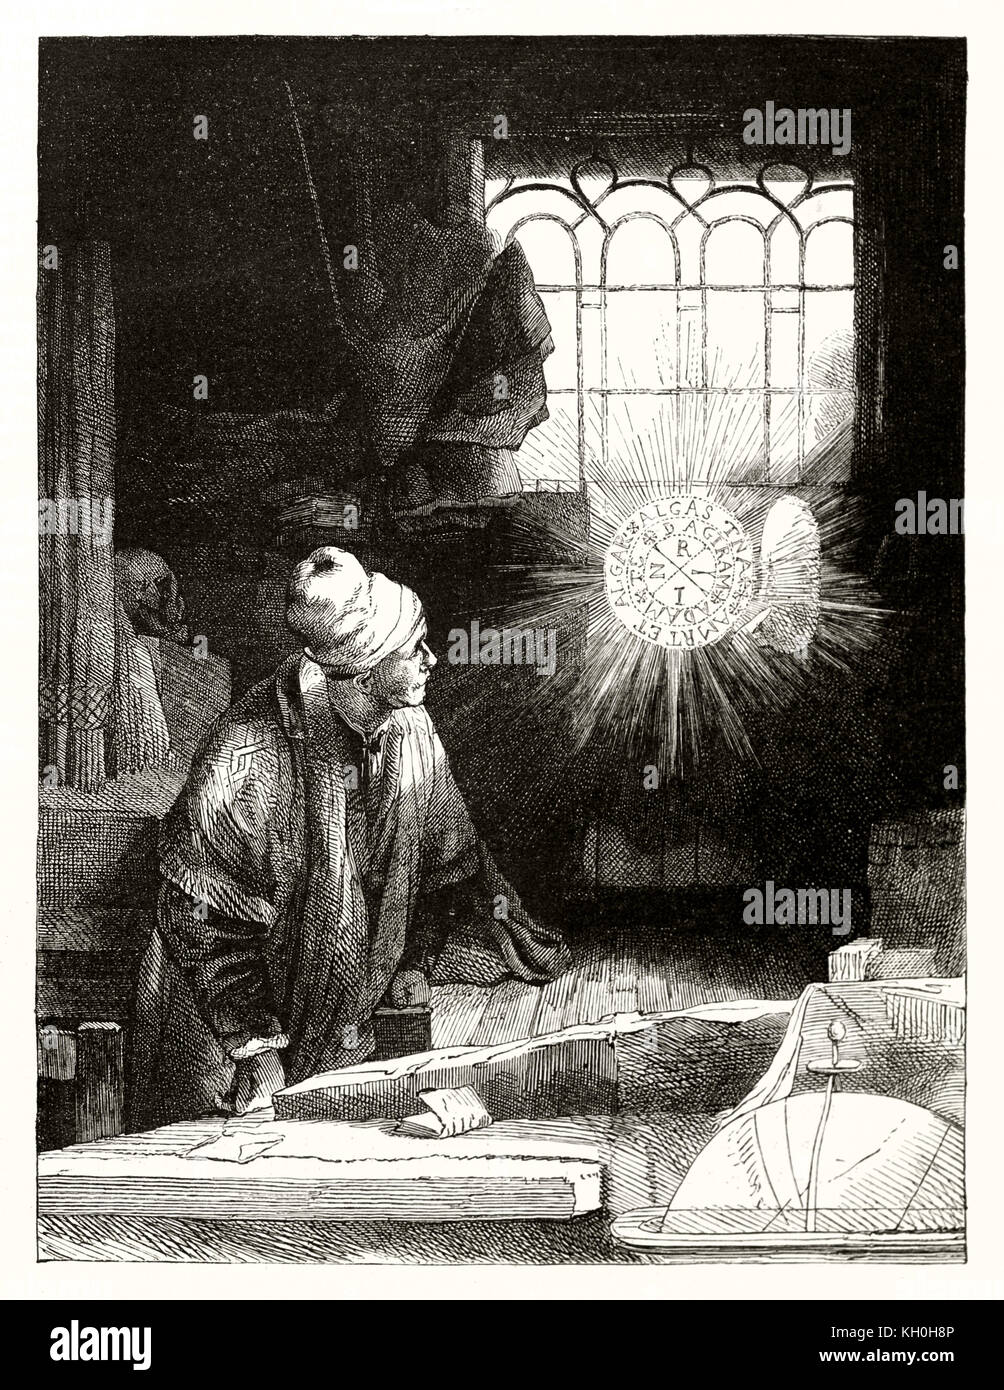 Reproduction d'une gravure ancienne gravure de Rembrandt Représentant Docteur Faustus. Par Marvy et Gouchar, publ. sur Magasin Pittoresque, Paris, 1847 Banque D'Images